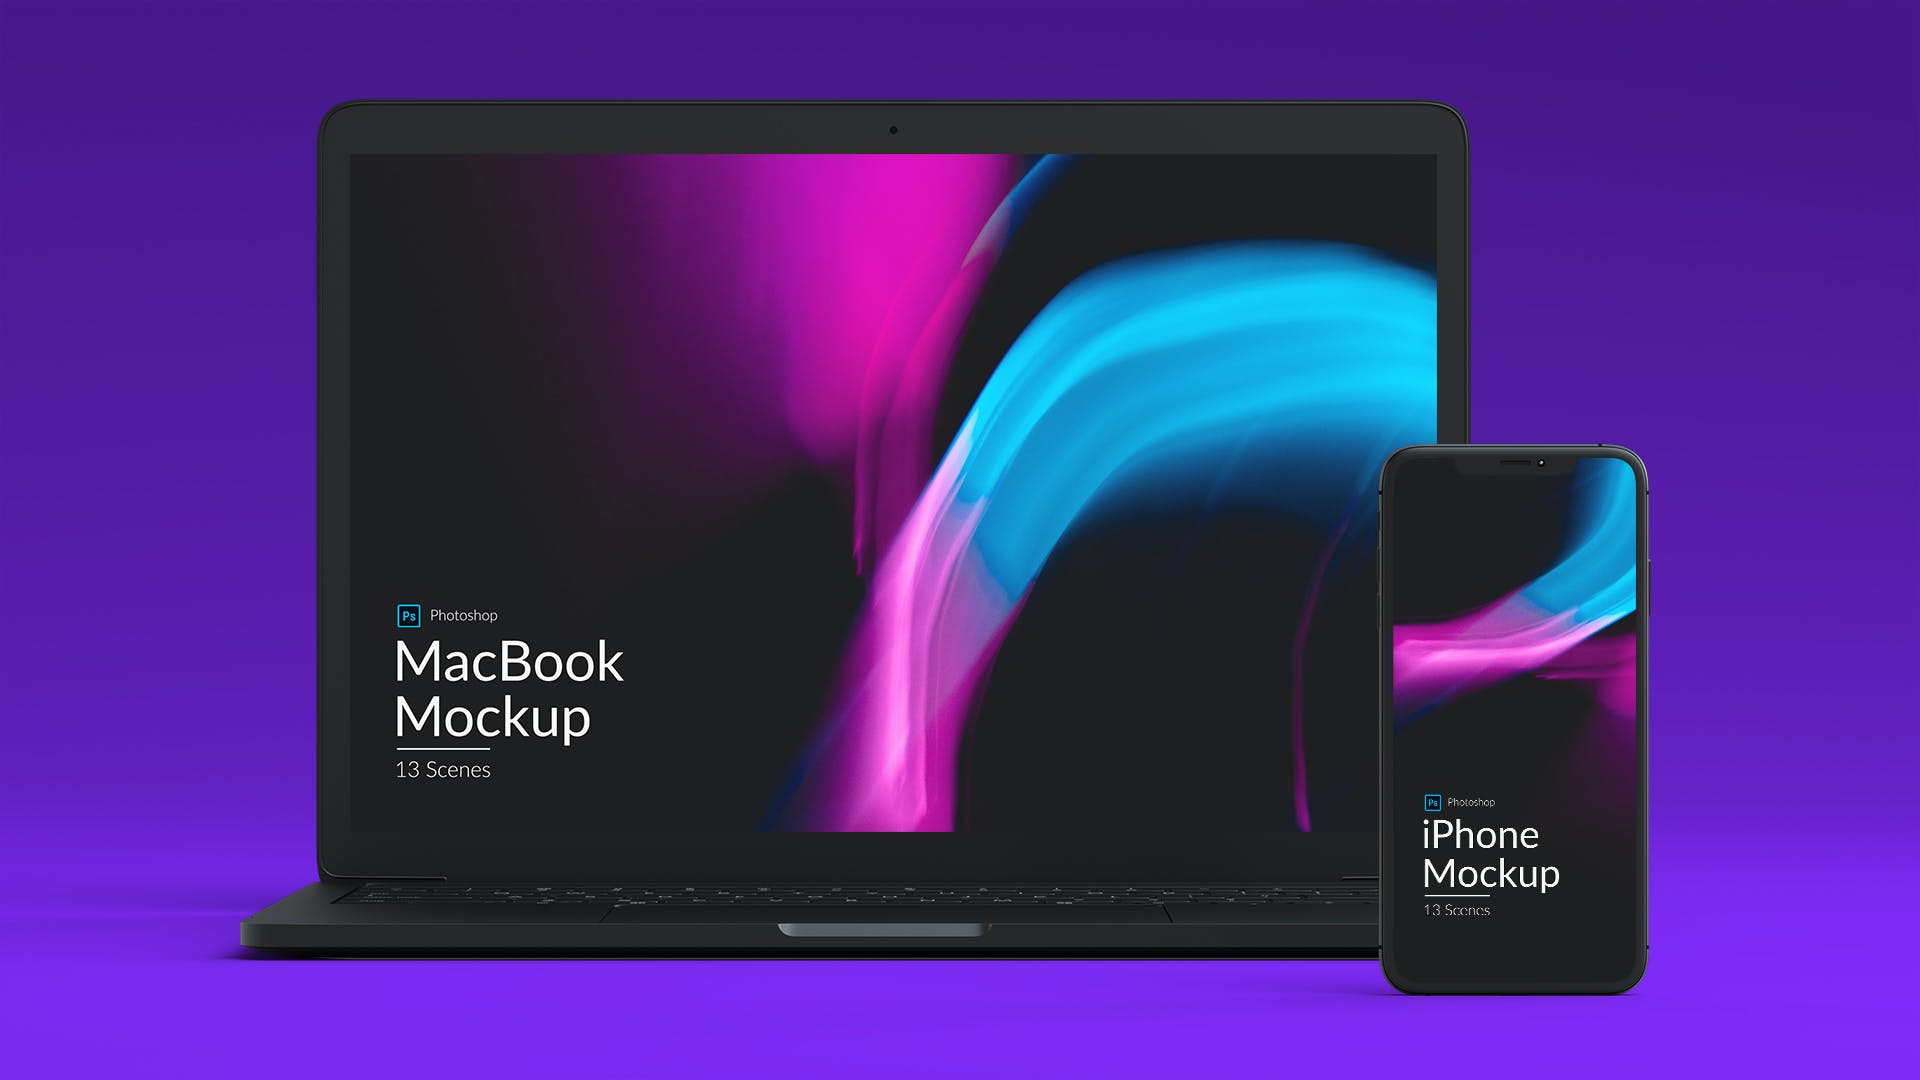 简约商务风格iphone11&MacBook屏幕演示样机模板 Iphone and MacBook Promo Mockups设计素材模板